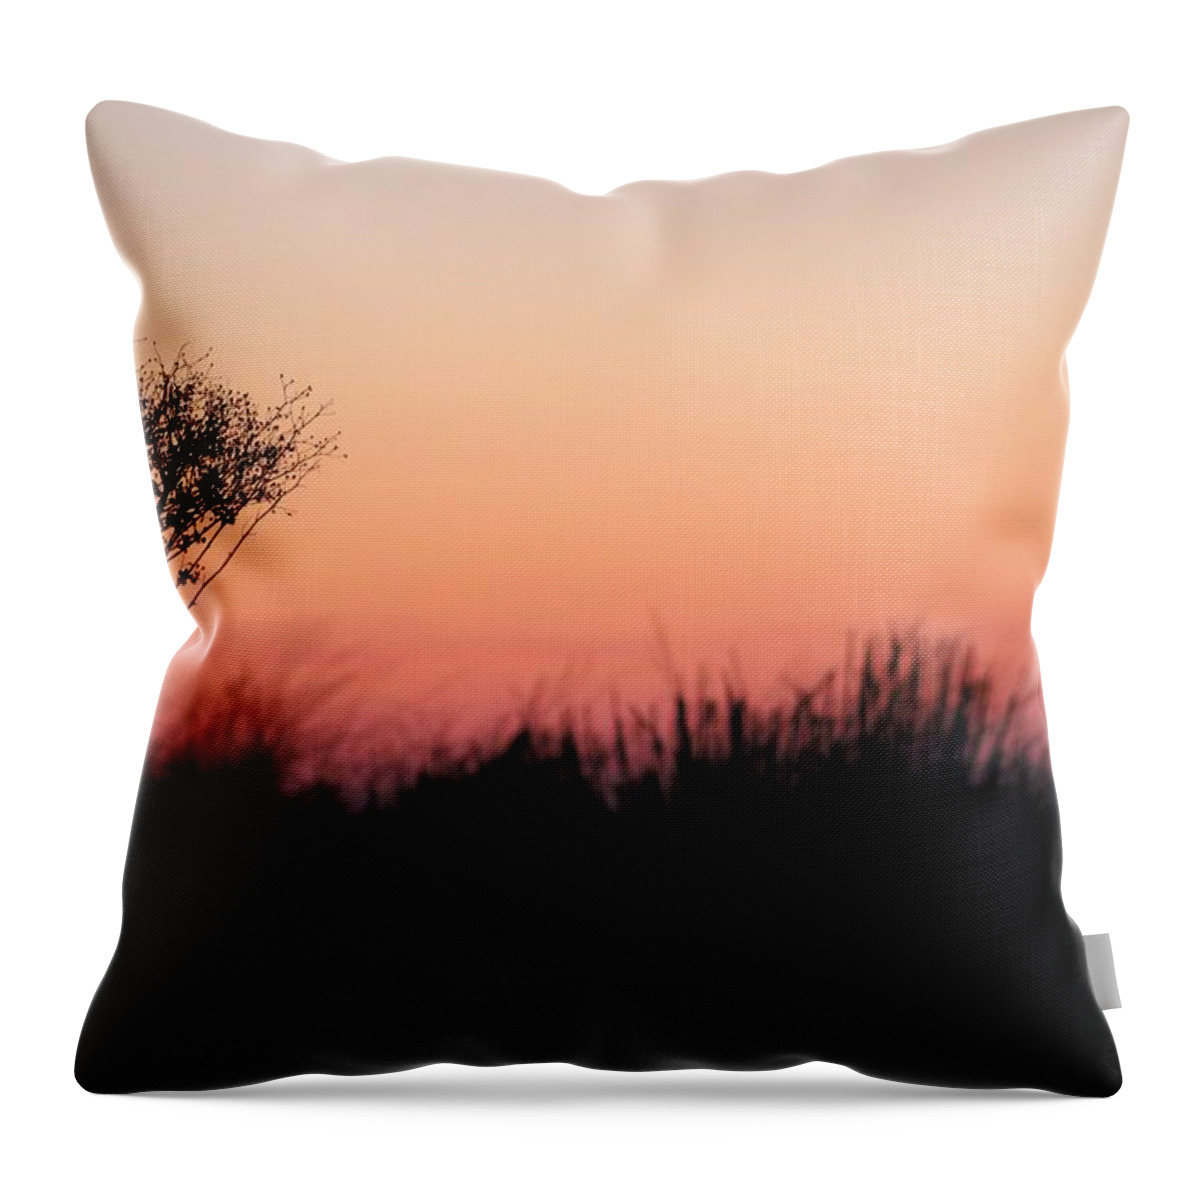 Sand Throw Pillow featuring the photograph Dune Grass Sunrise by Robert Banach